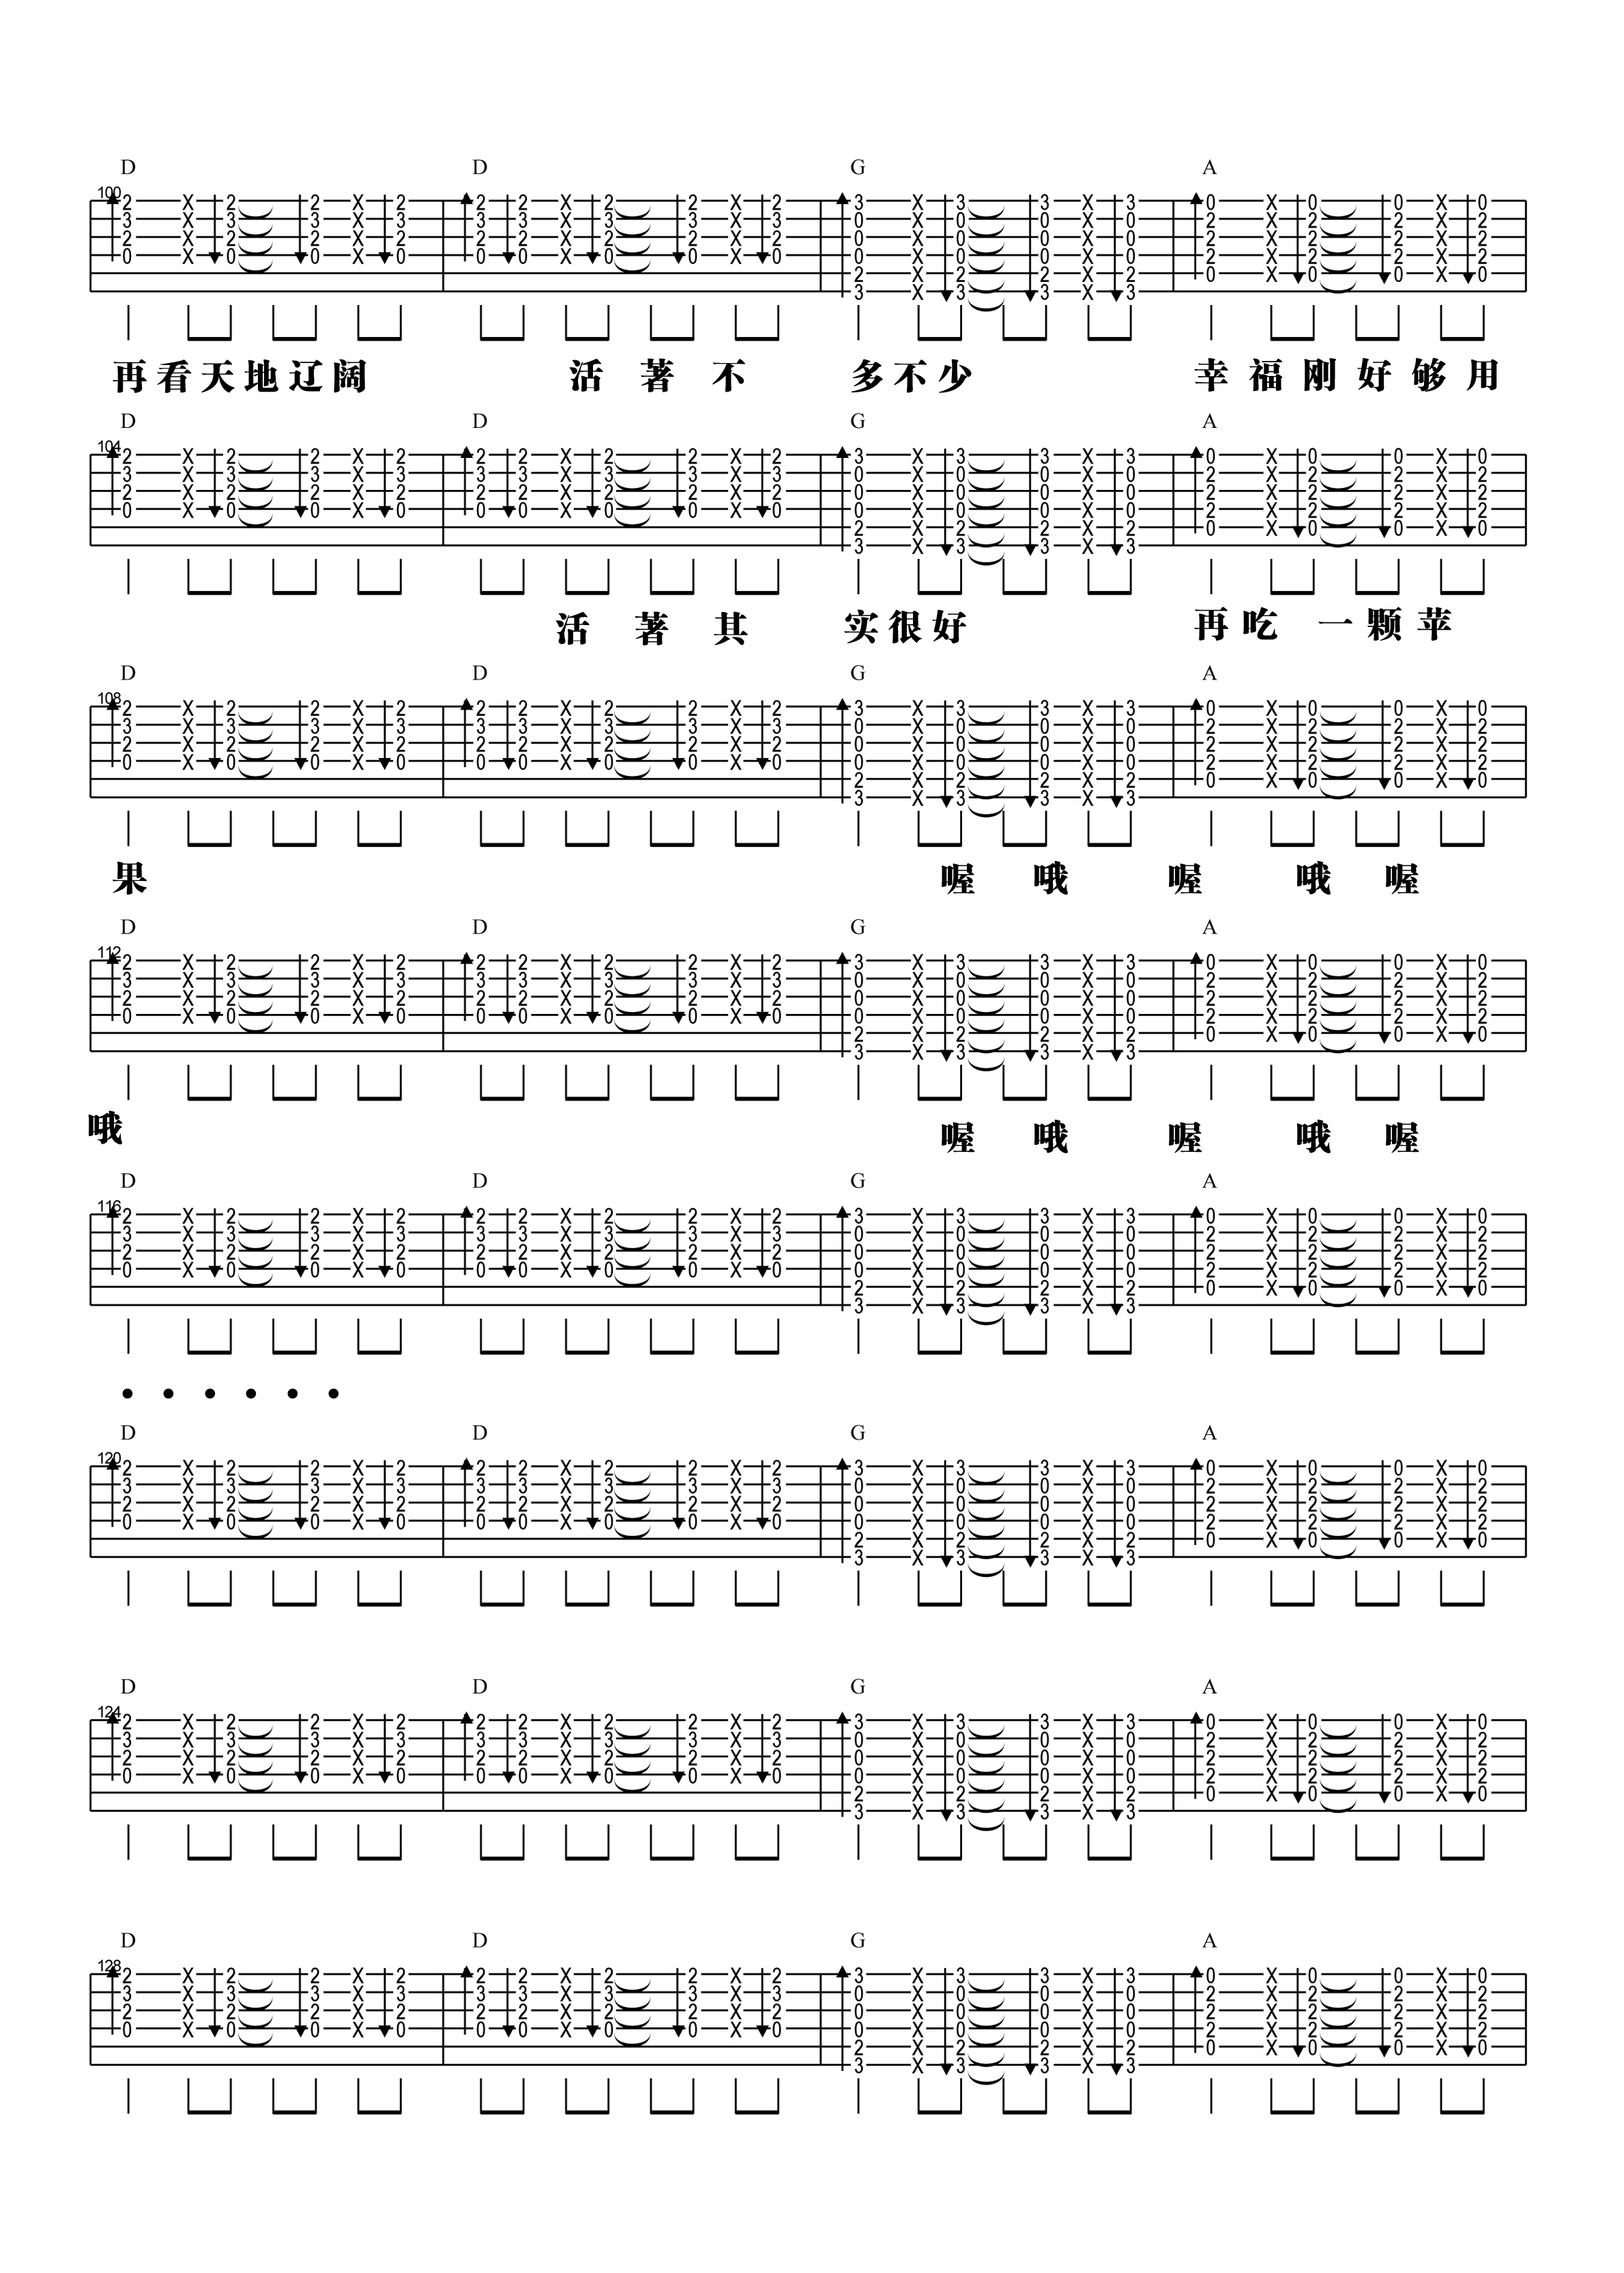 【阿信乐器】#23 五月天《一颗苹果》吉他教学吉他谱(图片谱,弹唱,教学)_五月天(Mayday)_4.jpg